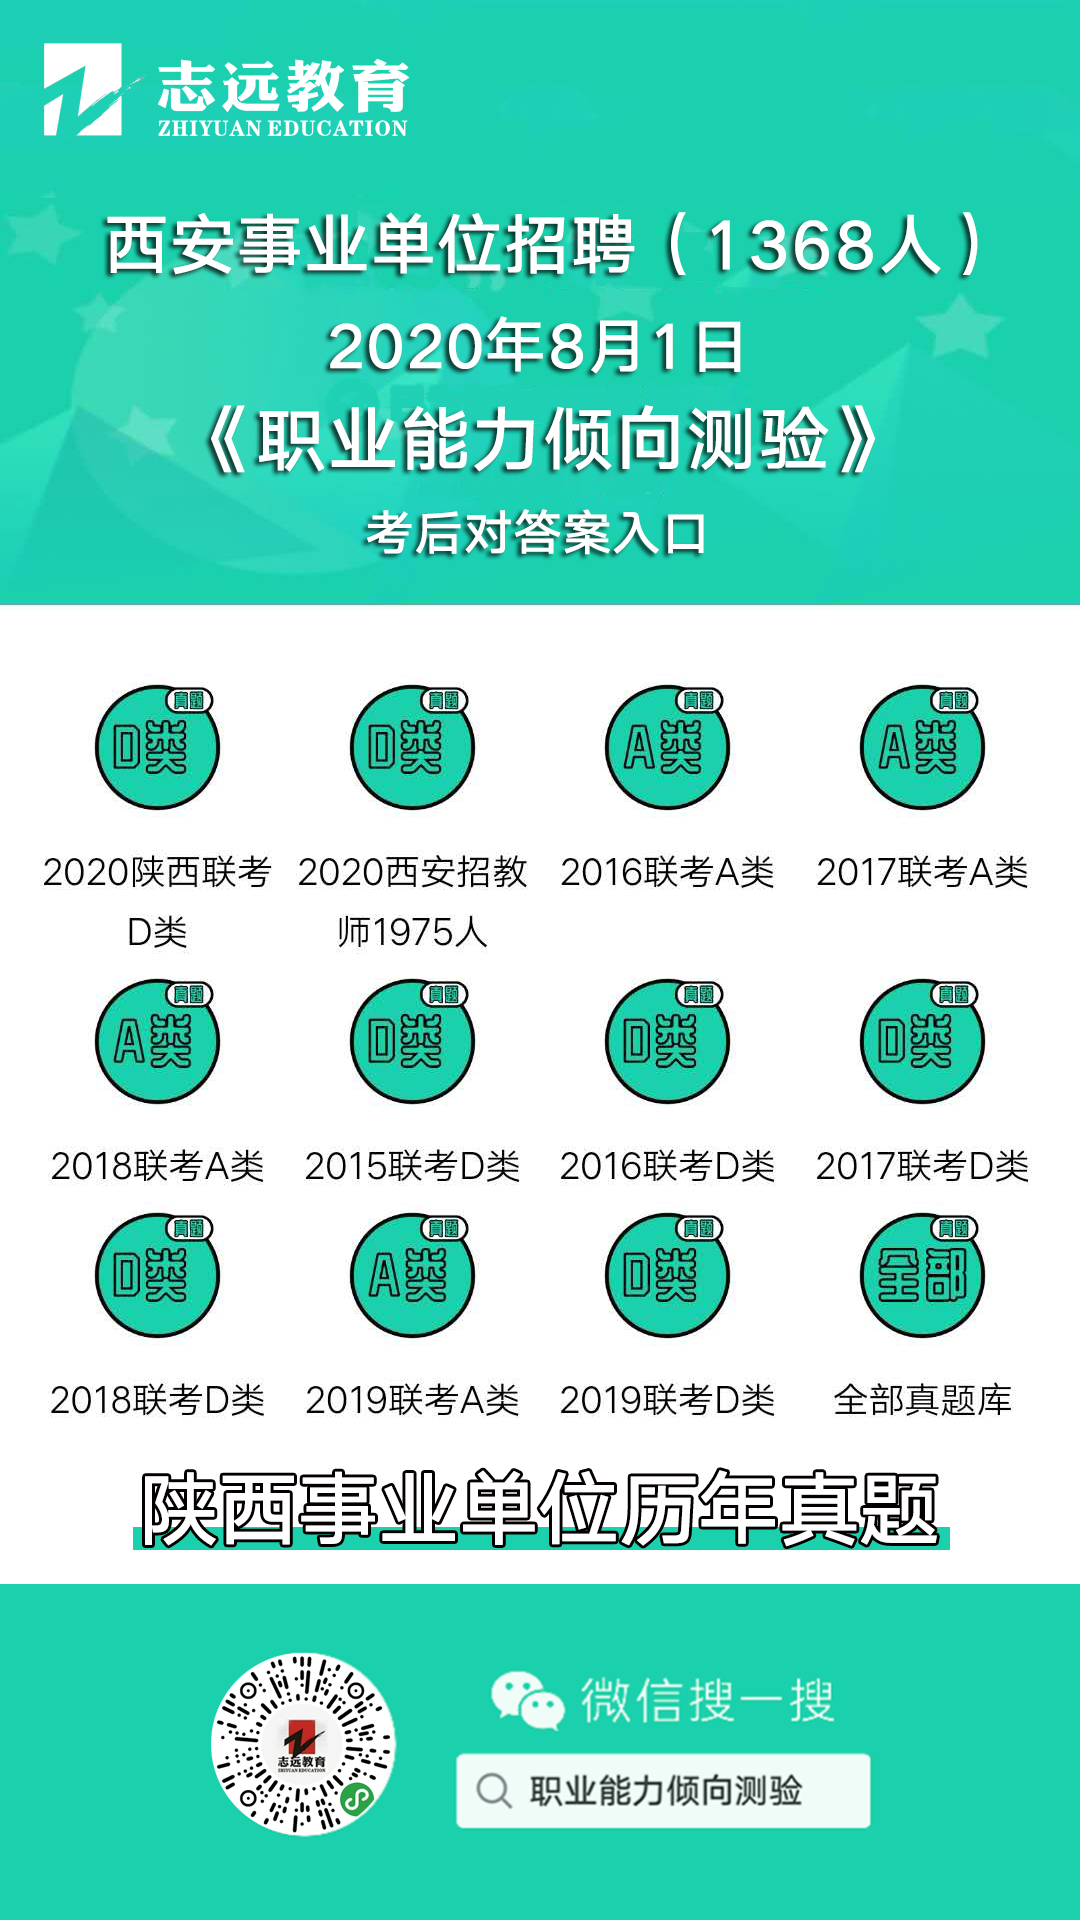 2020年8月1日笔试《考前资料》|西安事业单位招聘1368人(图1)